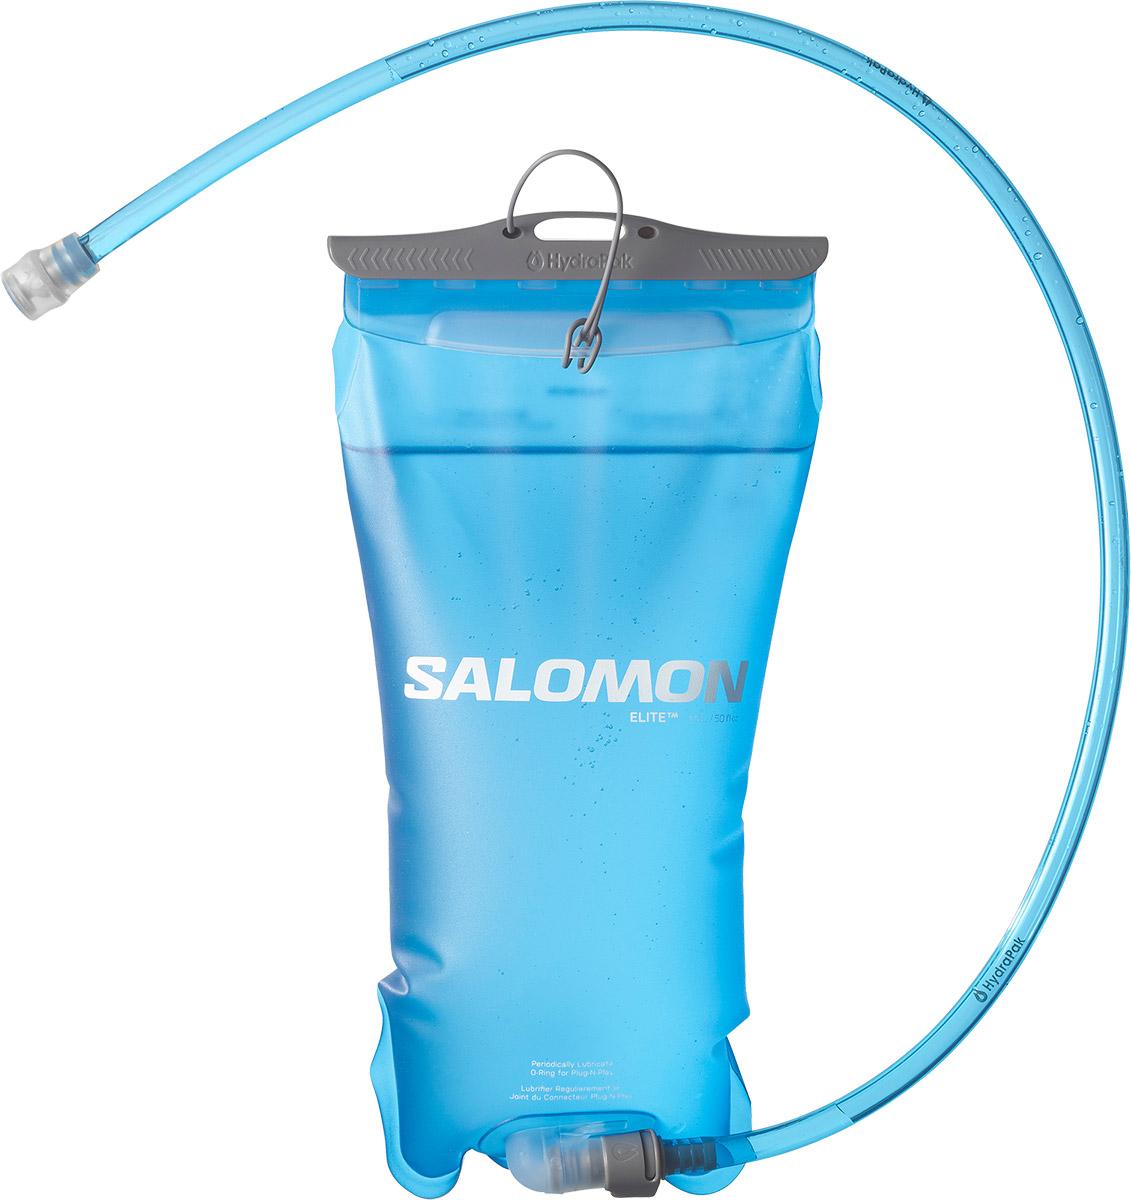 Salomon Soft Reservoir 1.5l - Clear Blue